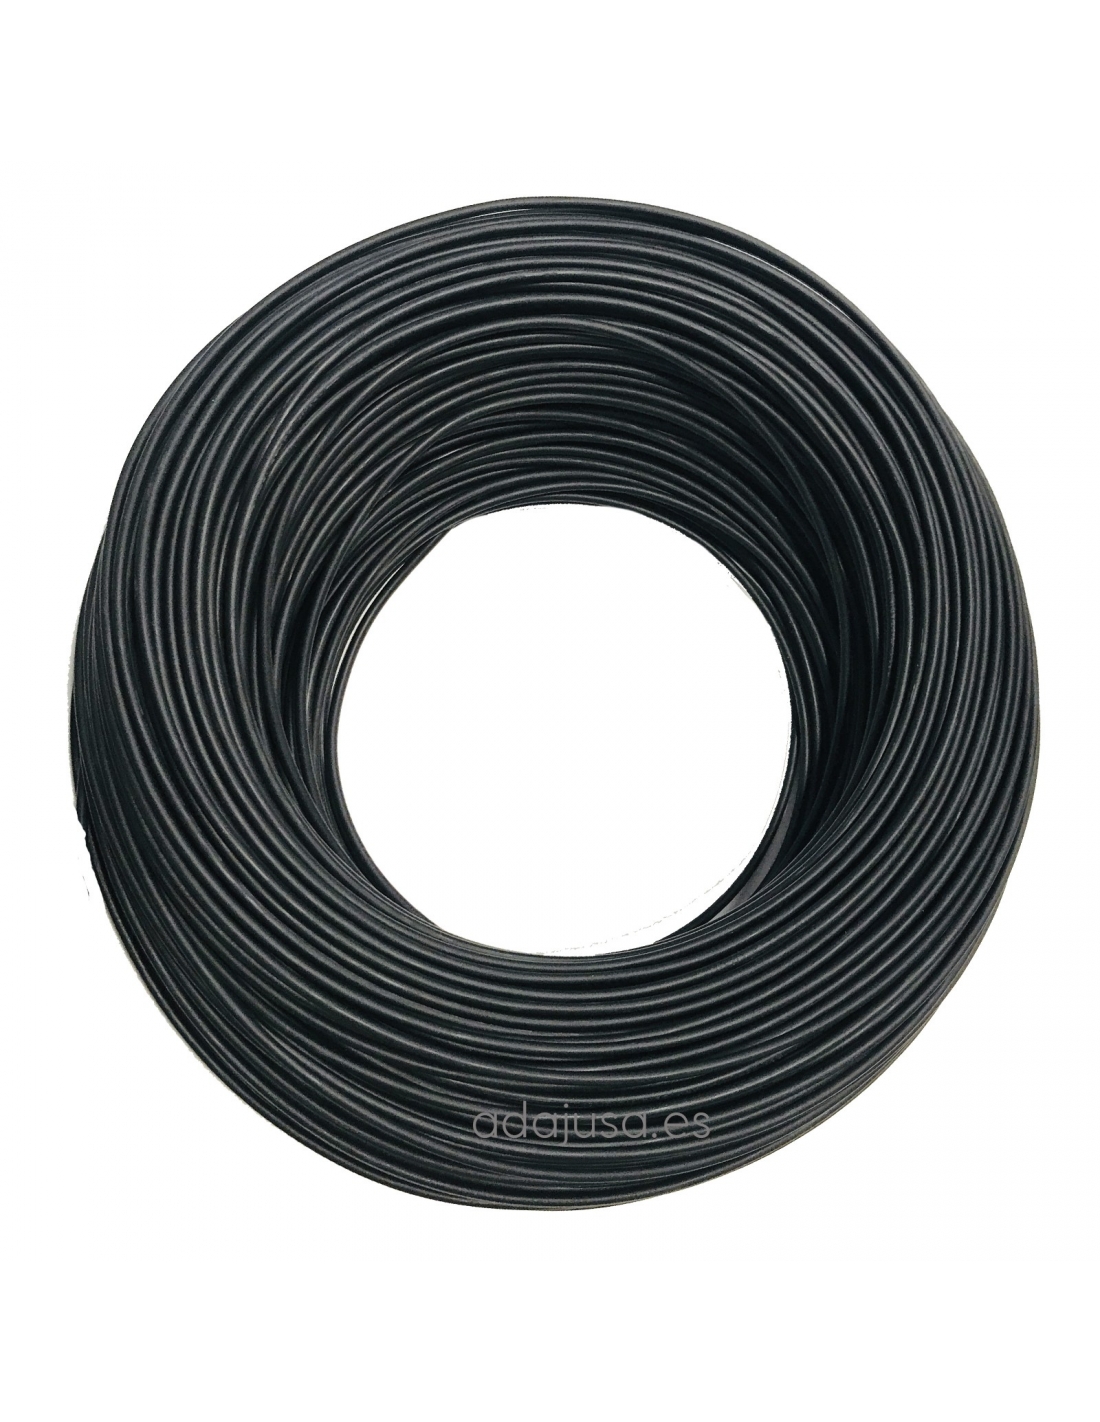 Flexi Cable Wrap, 0.5 to 1 x 12 ft, White